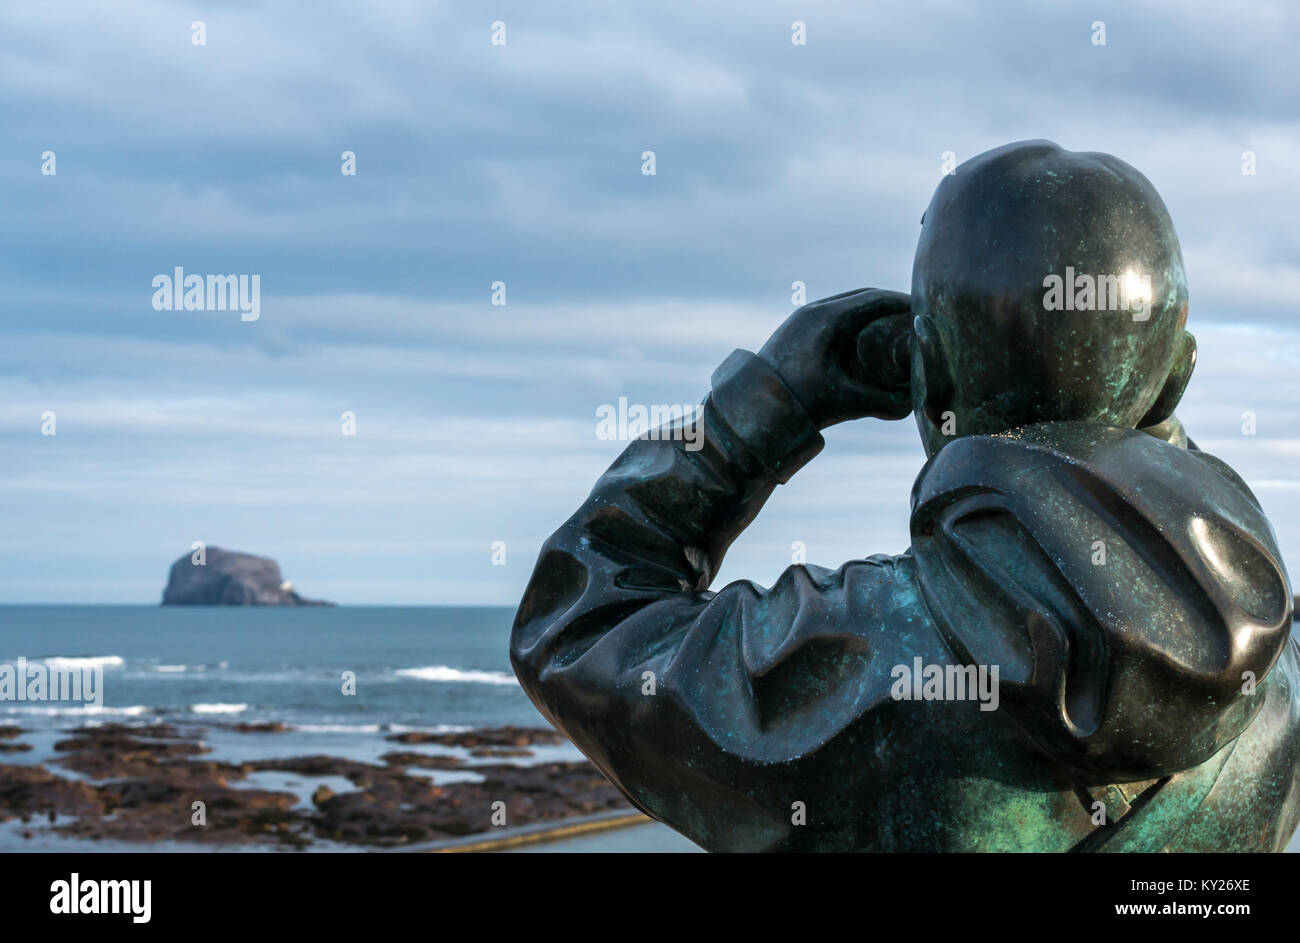 Life size Statue, die Watcher, von Kenny Hunter, bei Scottish Seabird Centre. Mann am Bass Rock Blick durch ein Fernglas, North Berwick, Schottland, Großbritannien Stockfoto